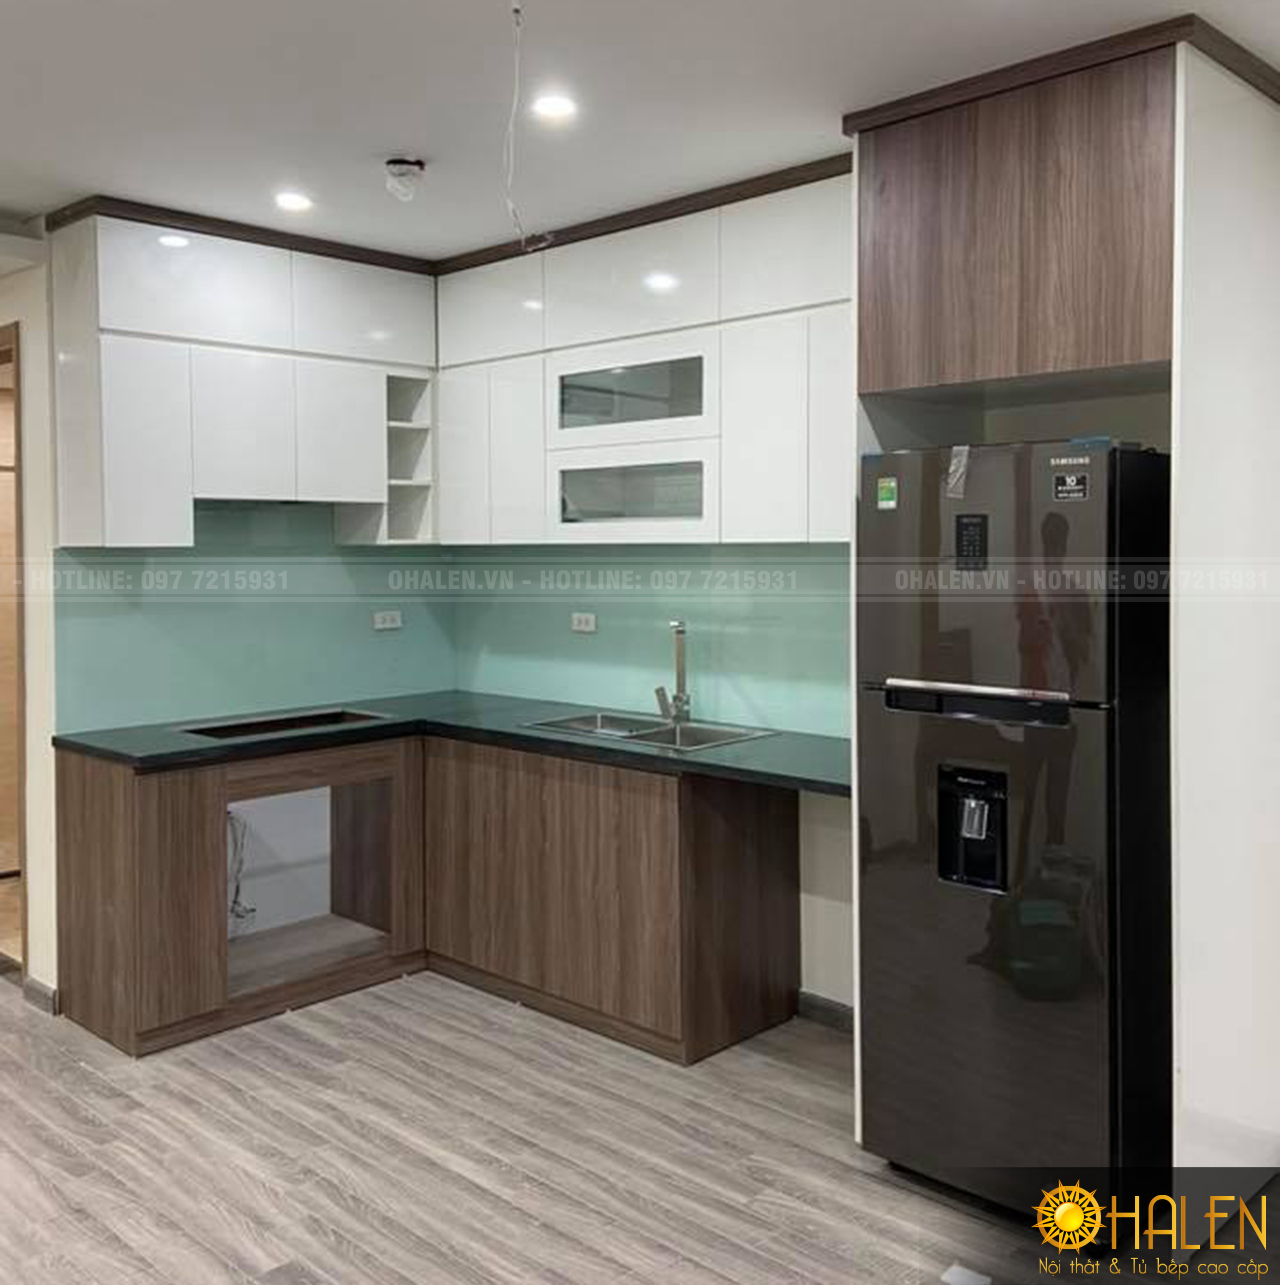 Với những không gian nhà bếp chung cư thì có thể sử dụng tủ bếp sát trần